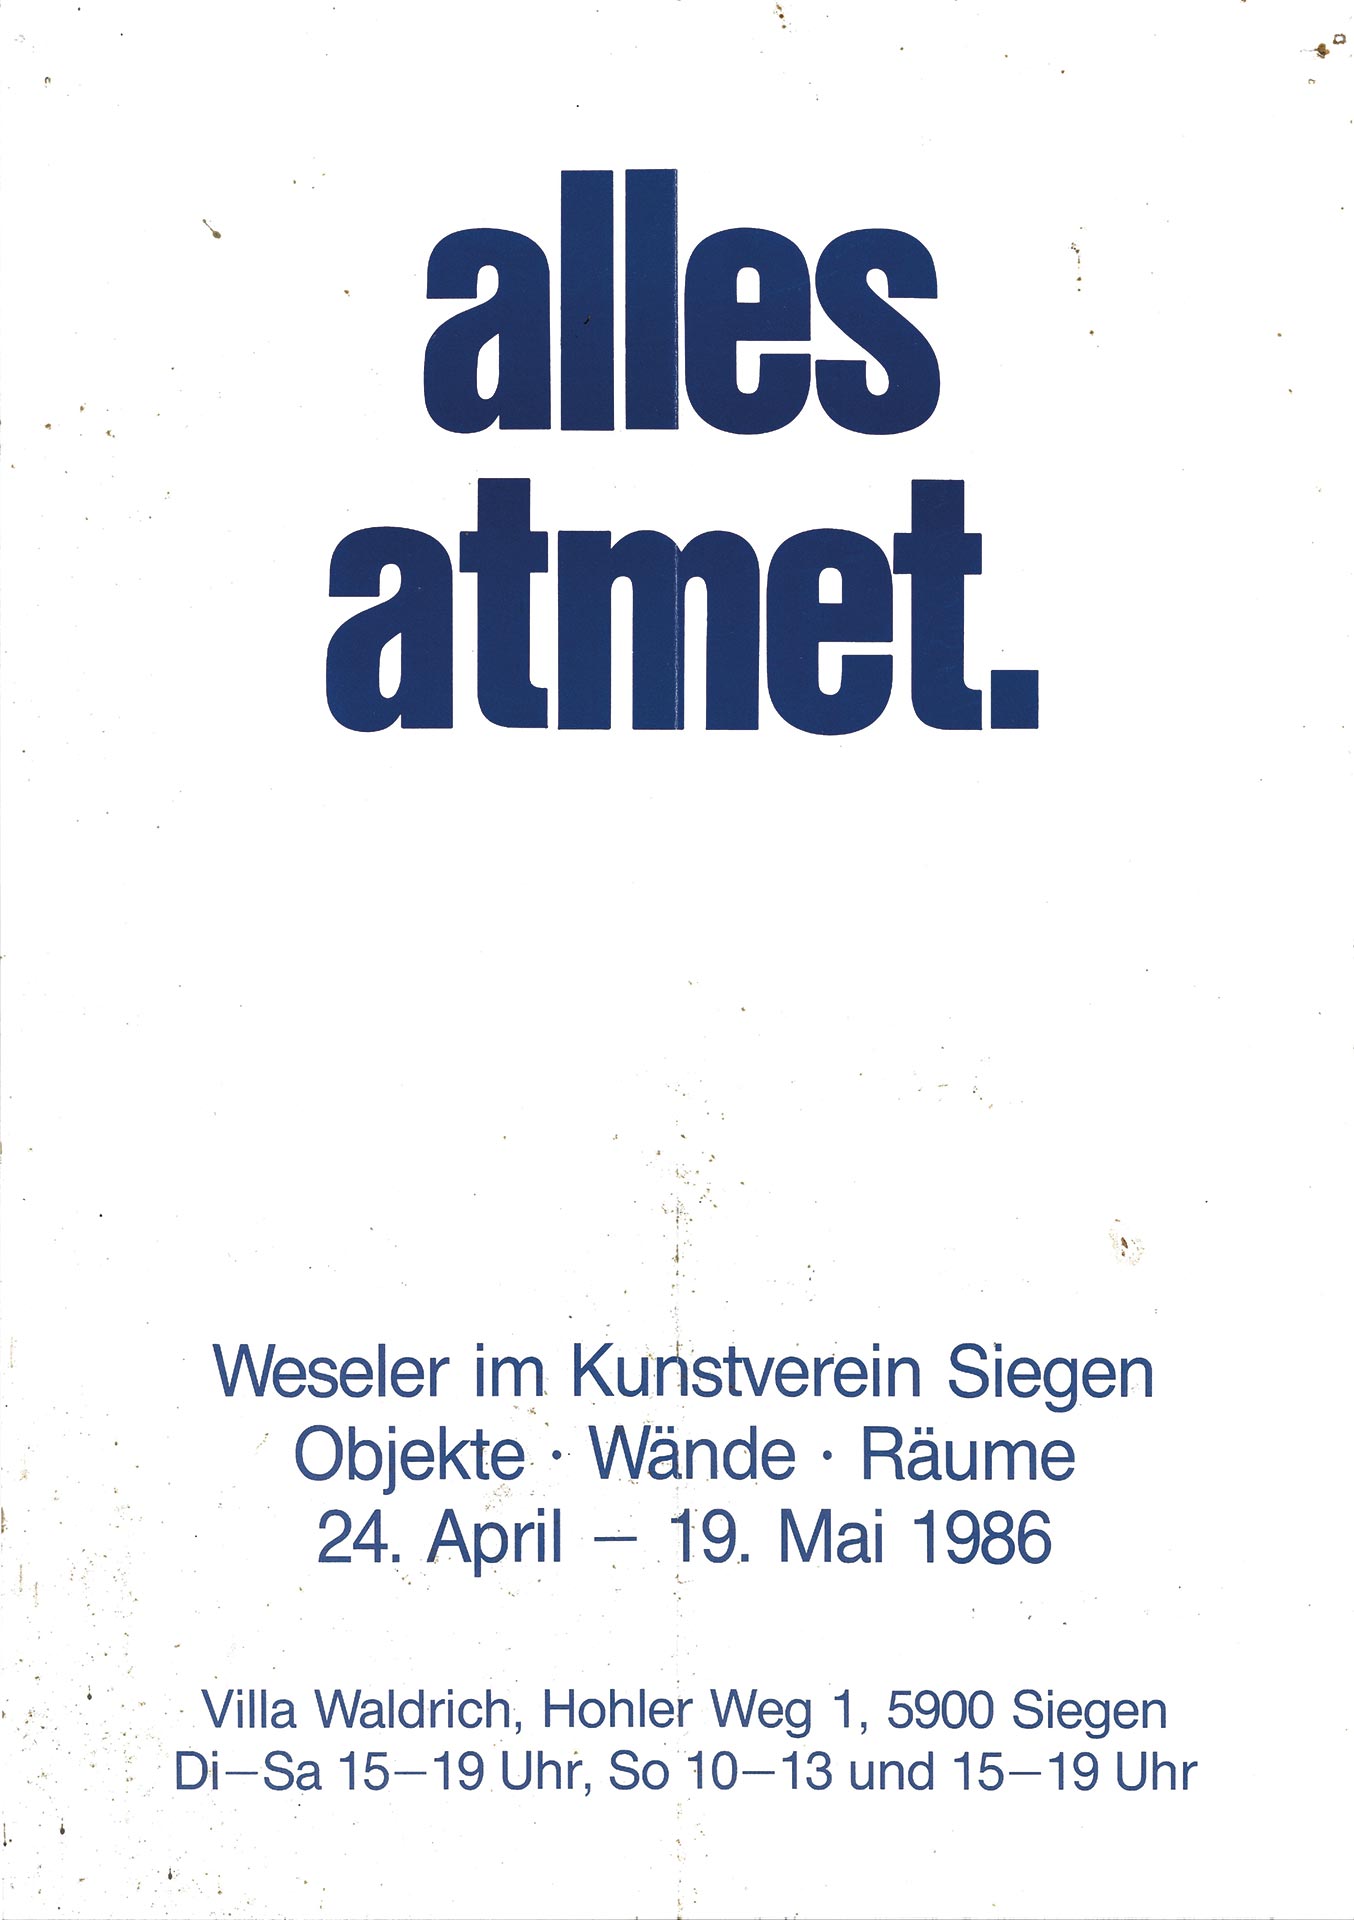 Exhibition Poster | Kunstverein Siegel | 1986 | Gunter Weseler